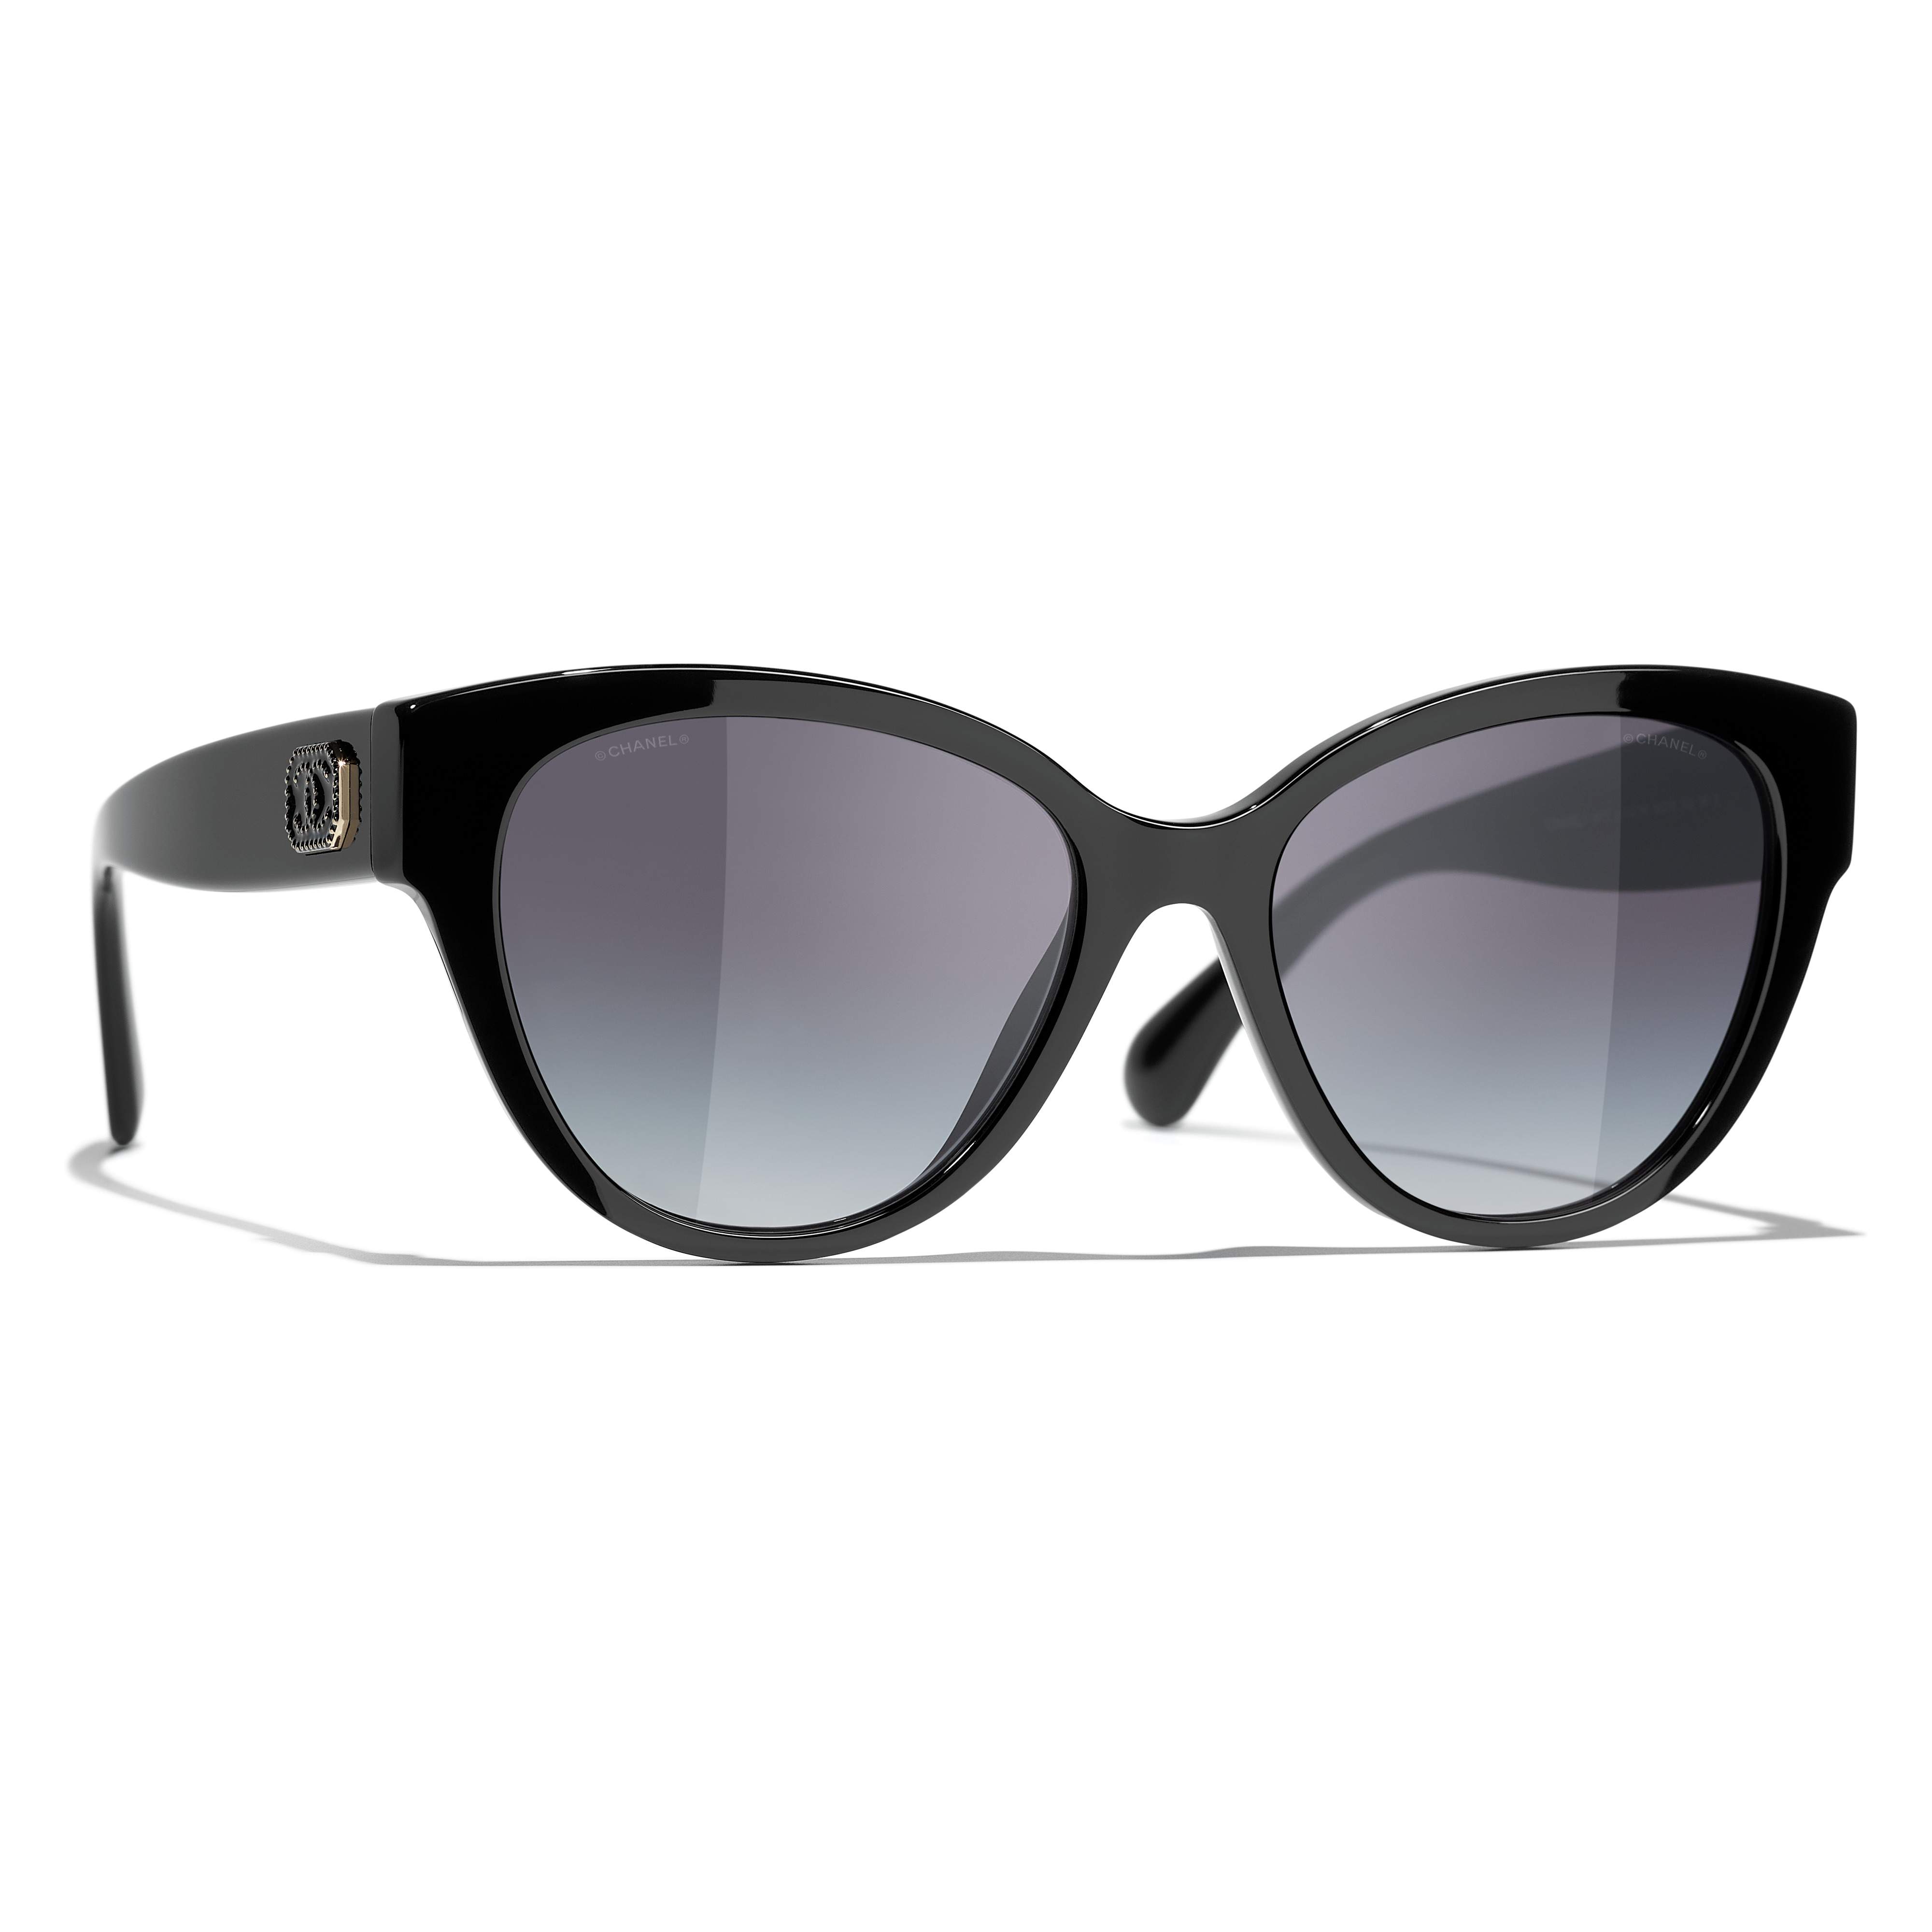 Sunglasses CHANEL CH5477 1403S6 56-18 Black in stock